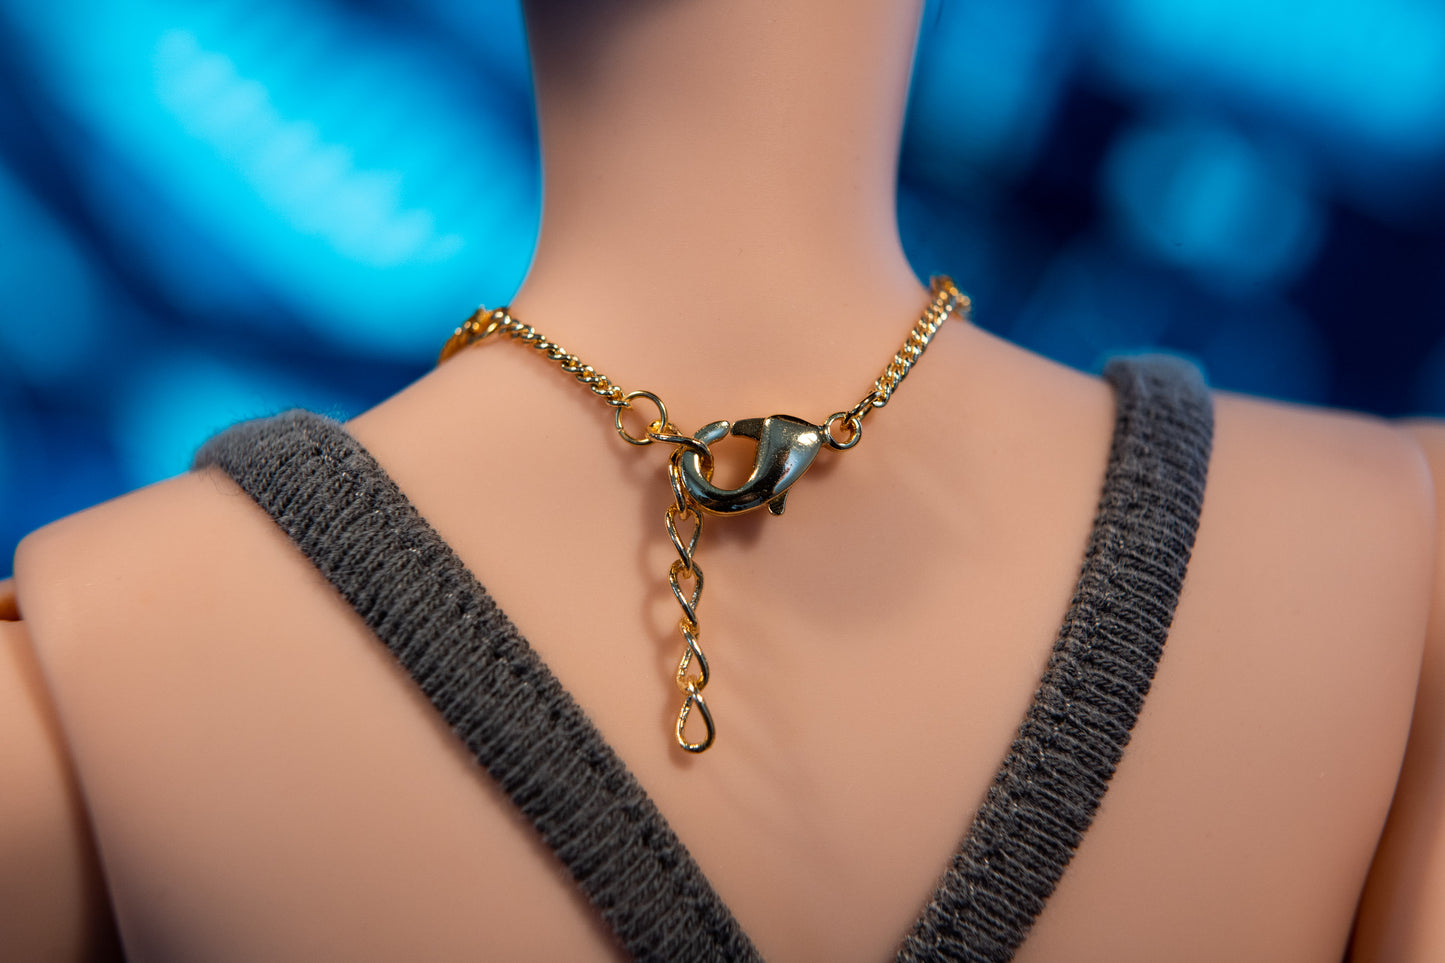 Necklace for Smartdoll La Pearle 3 Strand